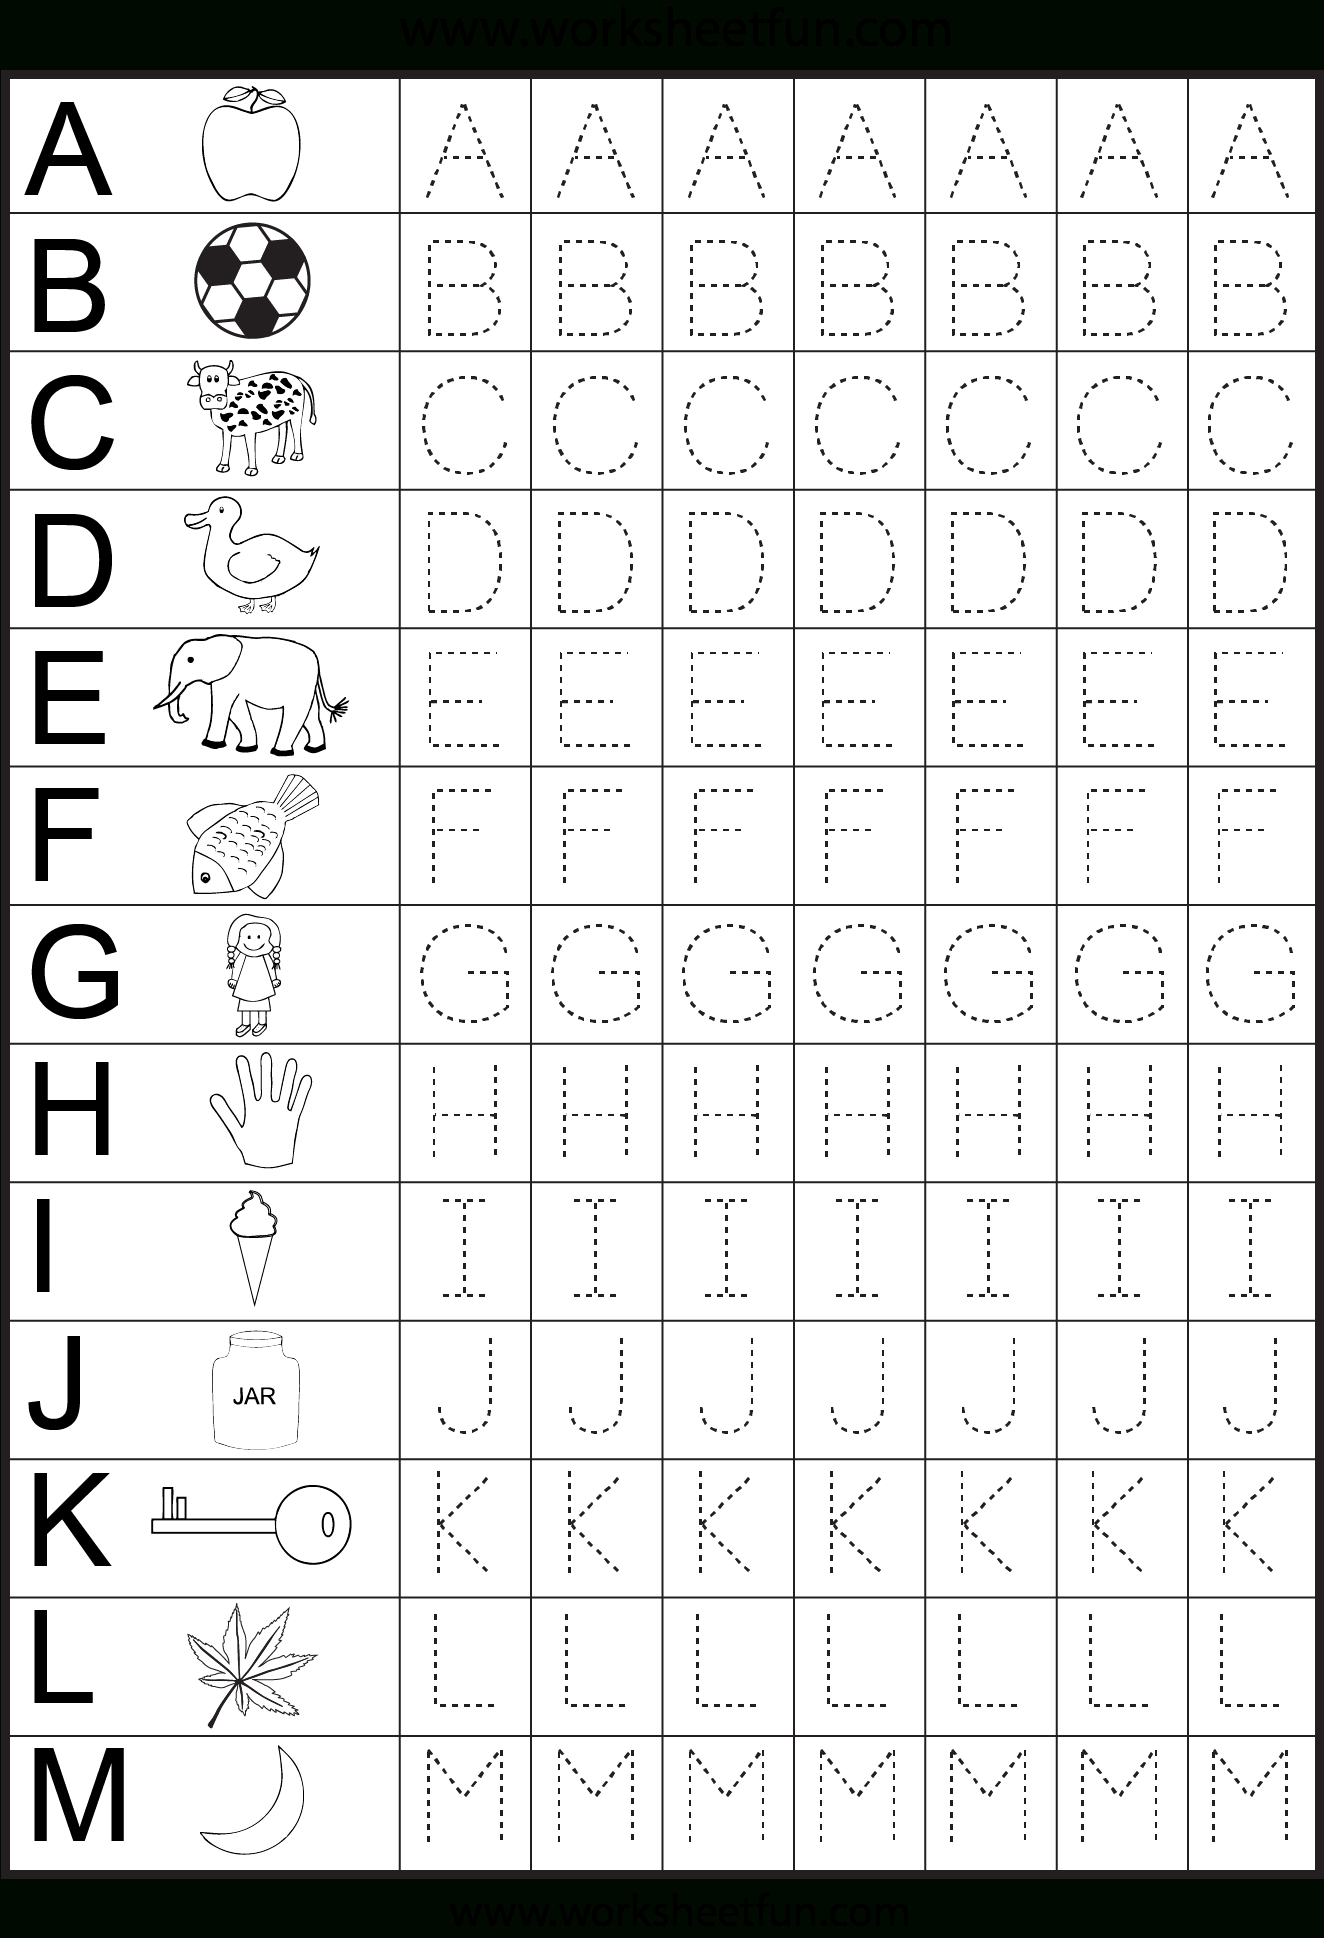 Free Printable Worksheets | Preschool Worksheets intended for Letter A Worksheets Preschool Free